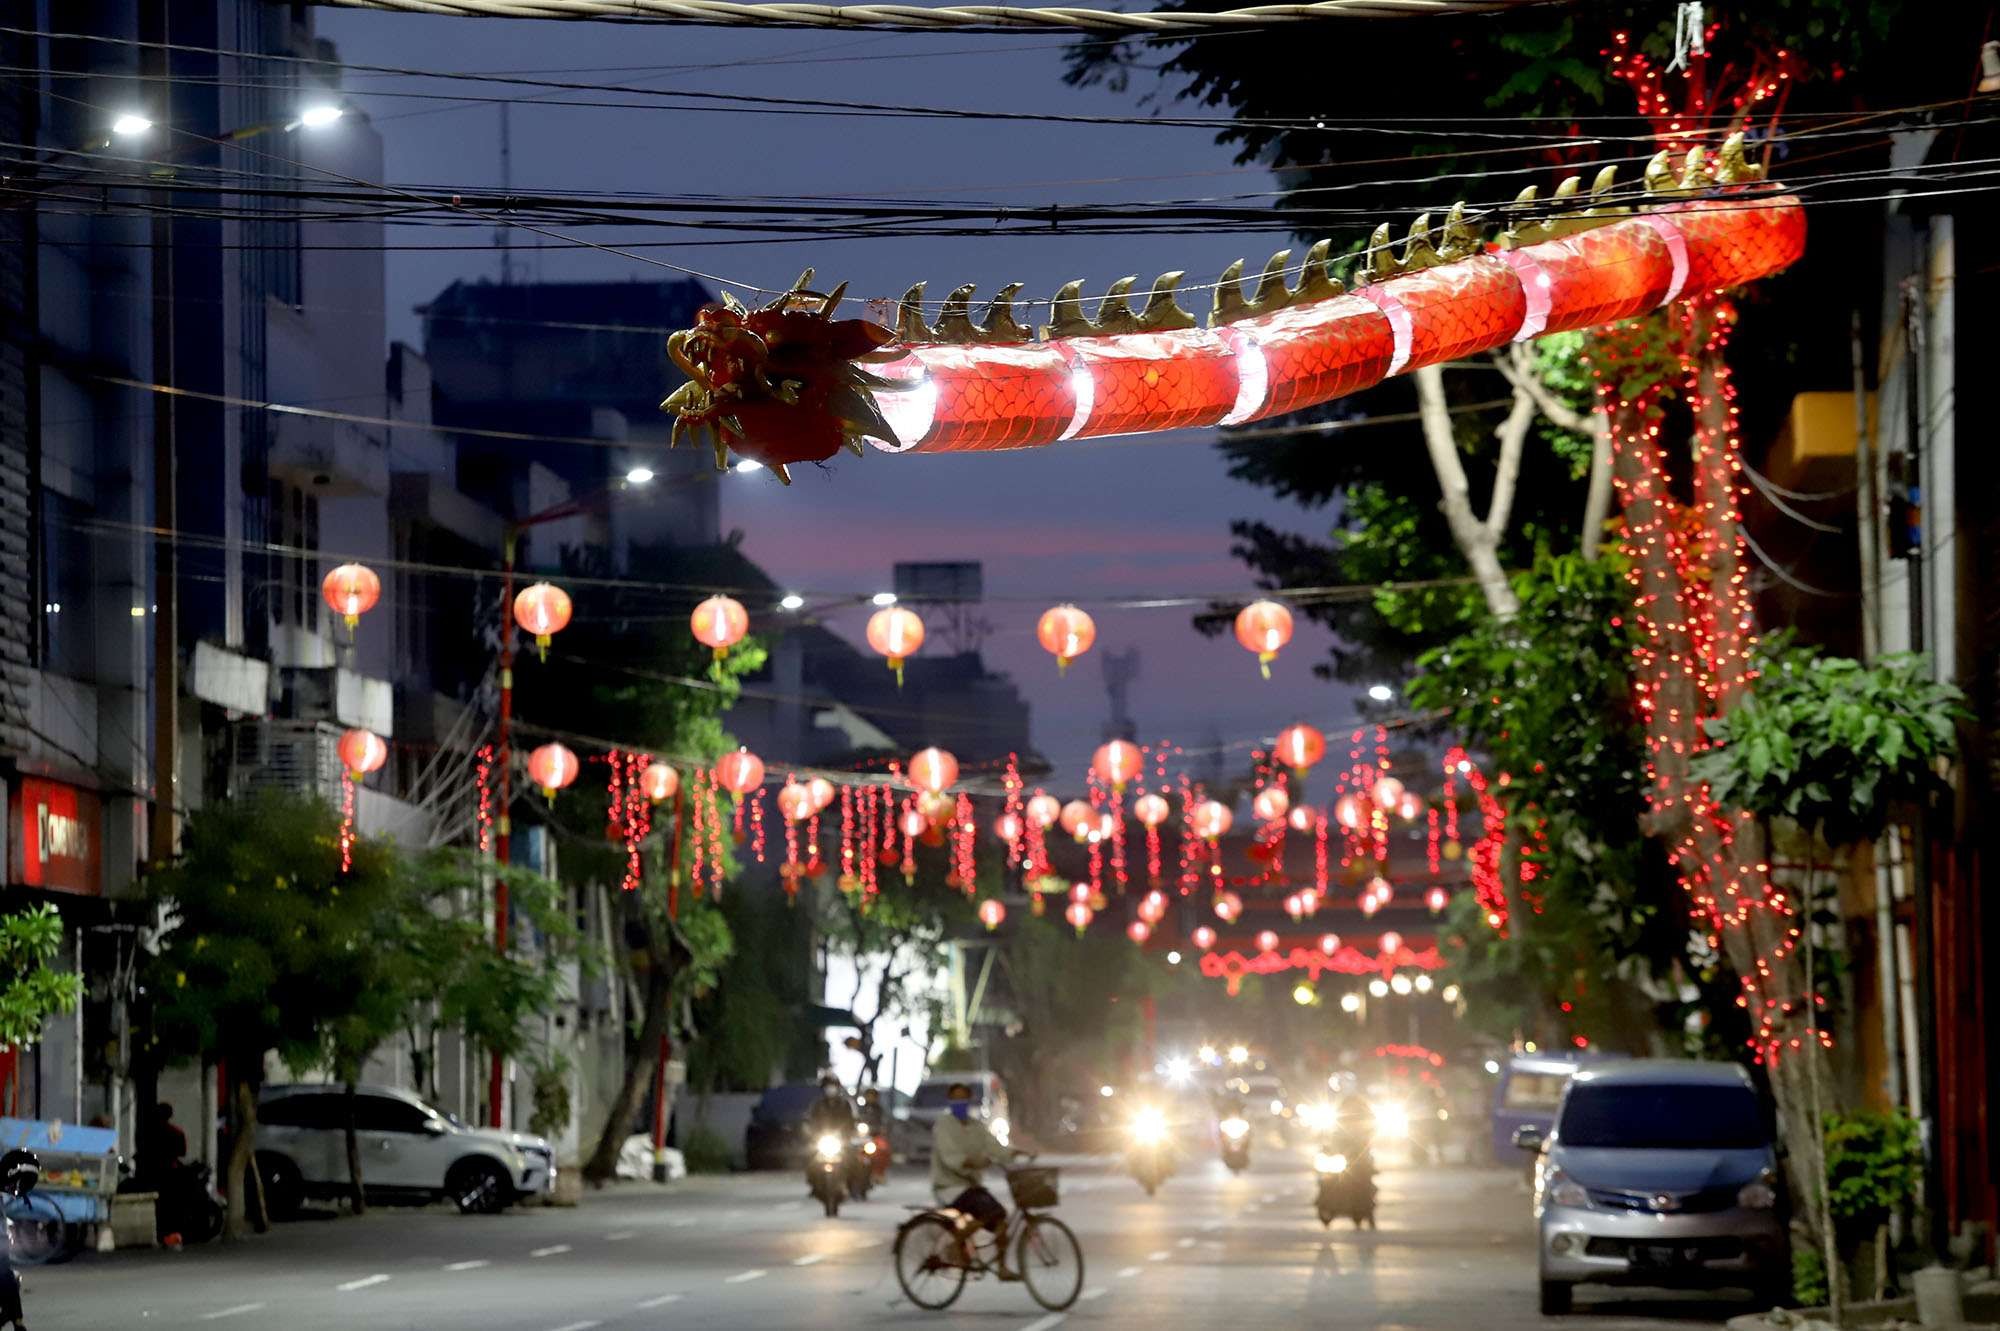 Lampion dan umbul-umbul yang sudah terpasang, sebagai persiapan pembukaan wisata kawasan Kya-Kya. (Foto: Humas Pemkot Surabaya)